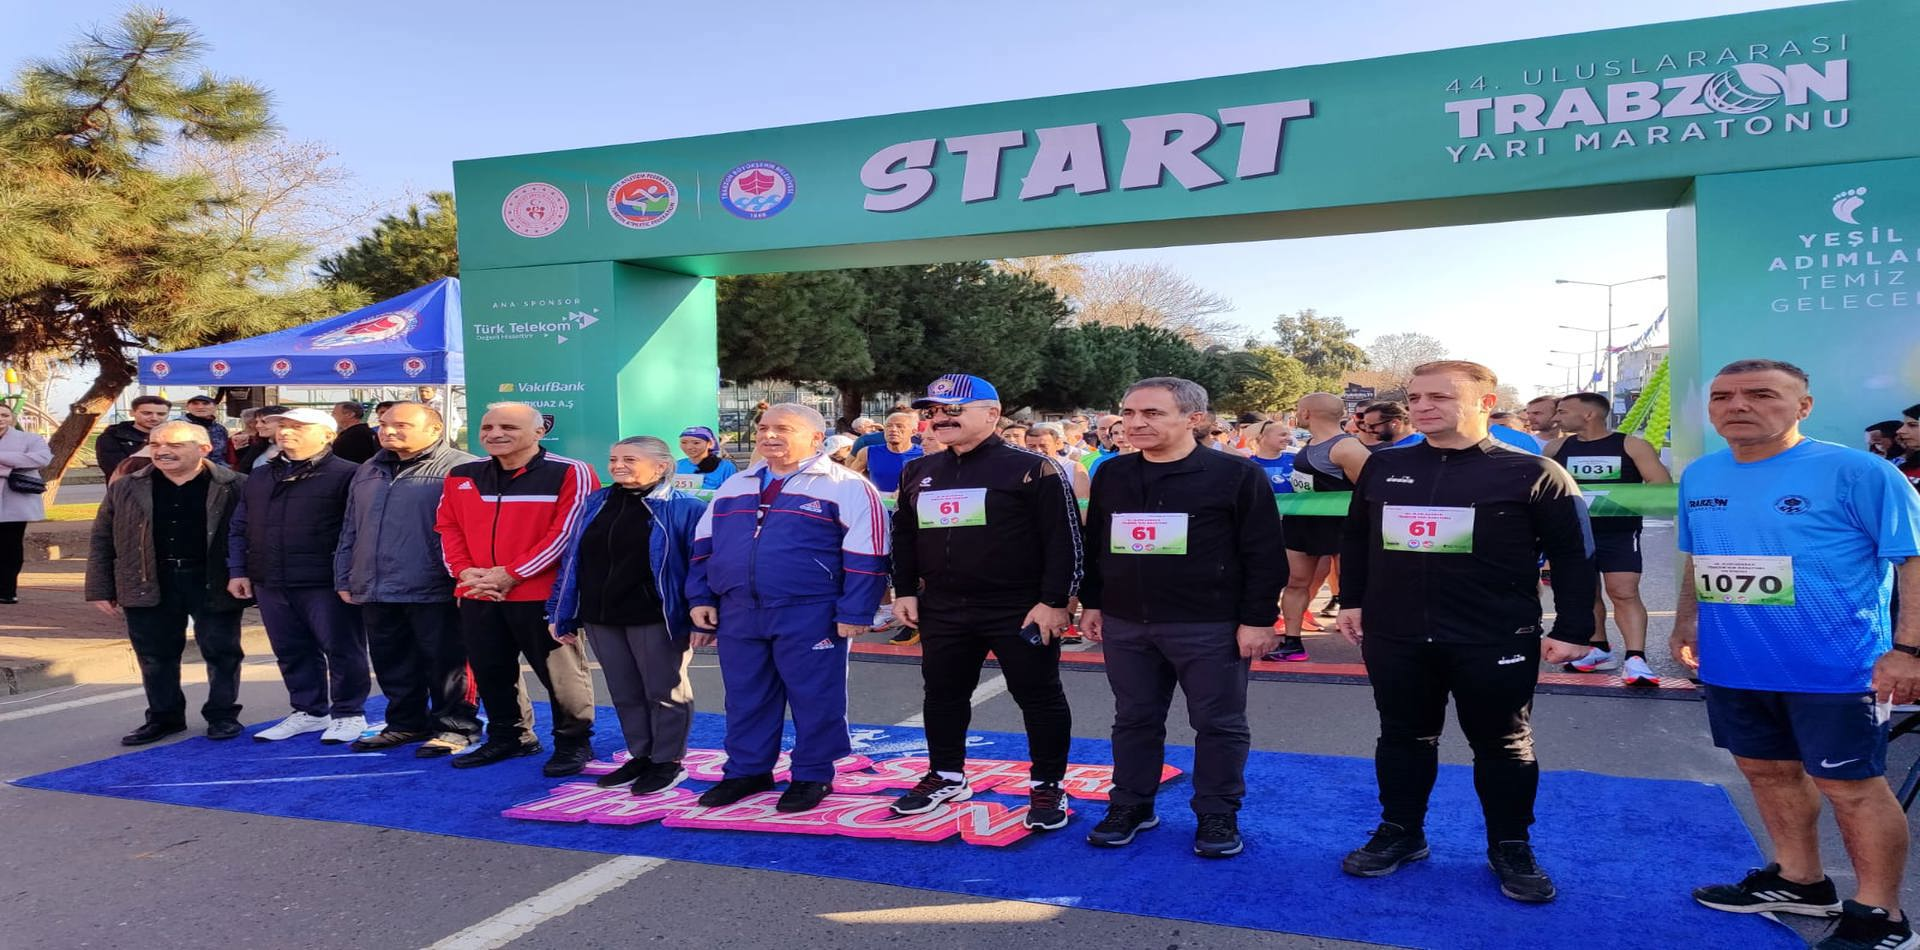 Trabzon Yarı Maratonu, “Yeşil Adımlar, Temiz Gelecek” sloganıyla koşuldu.